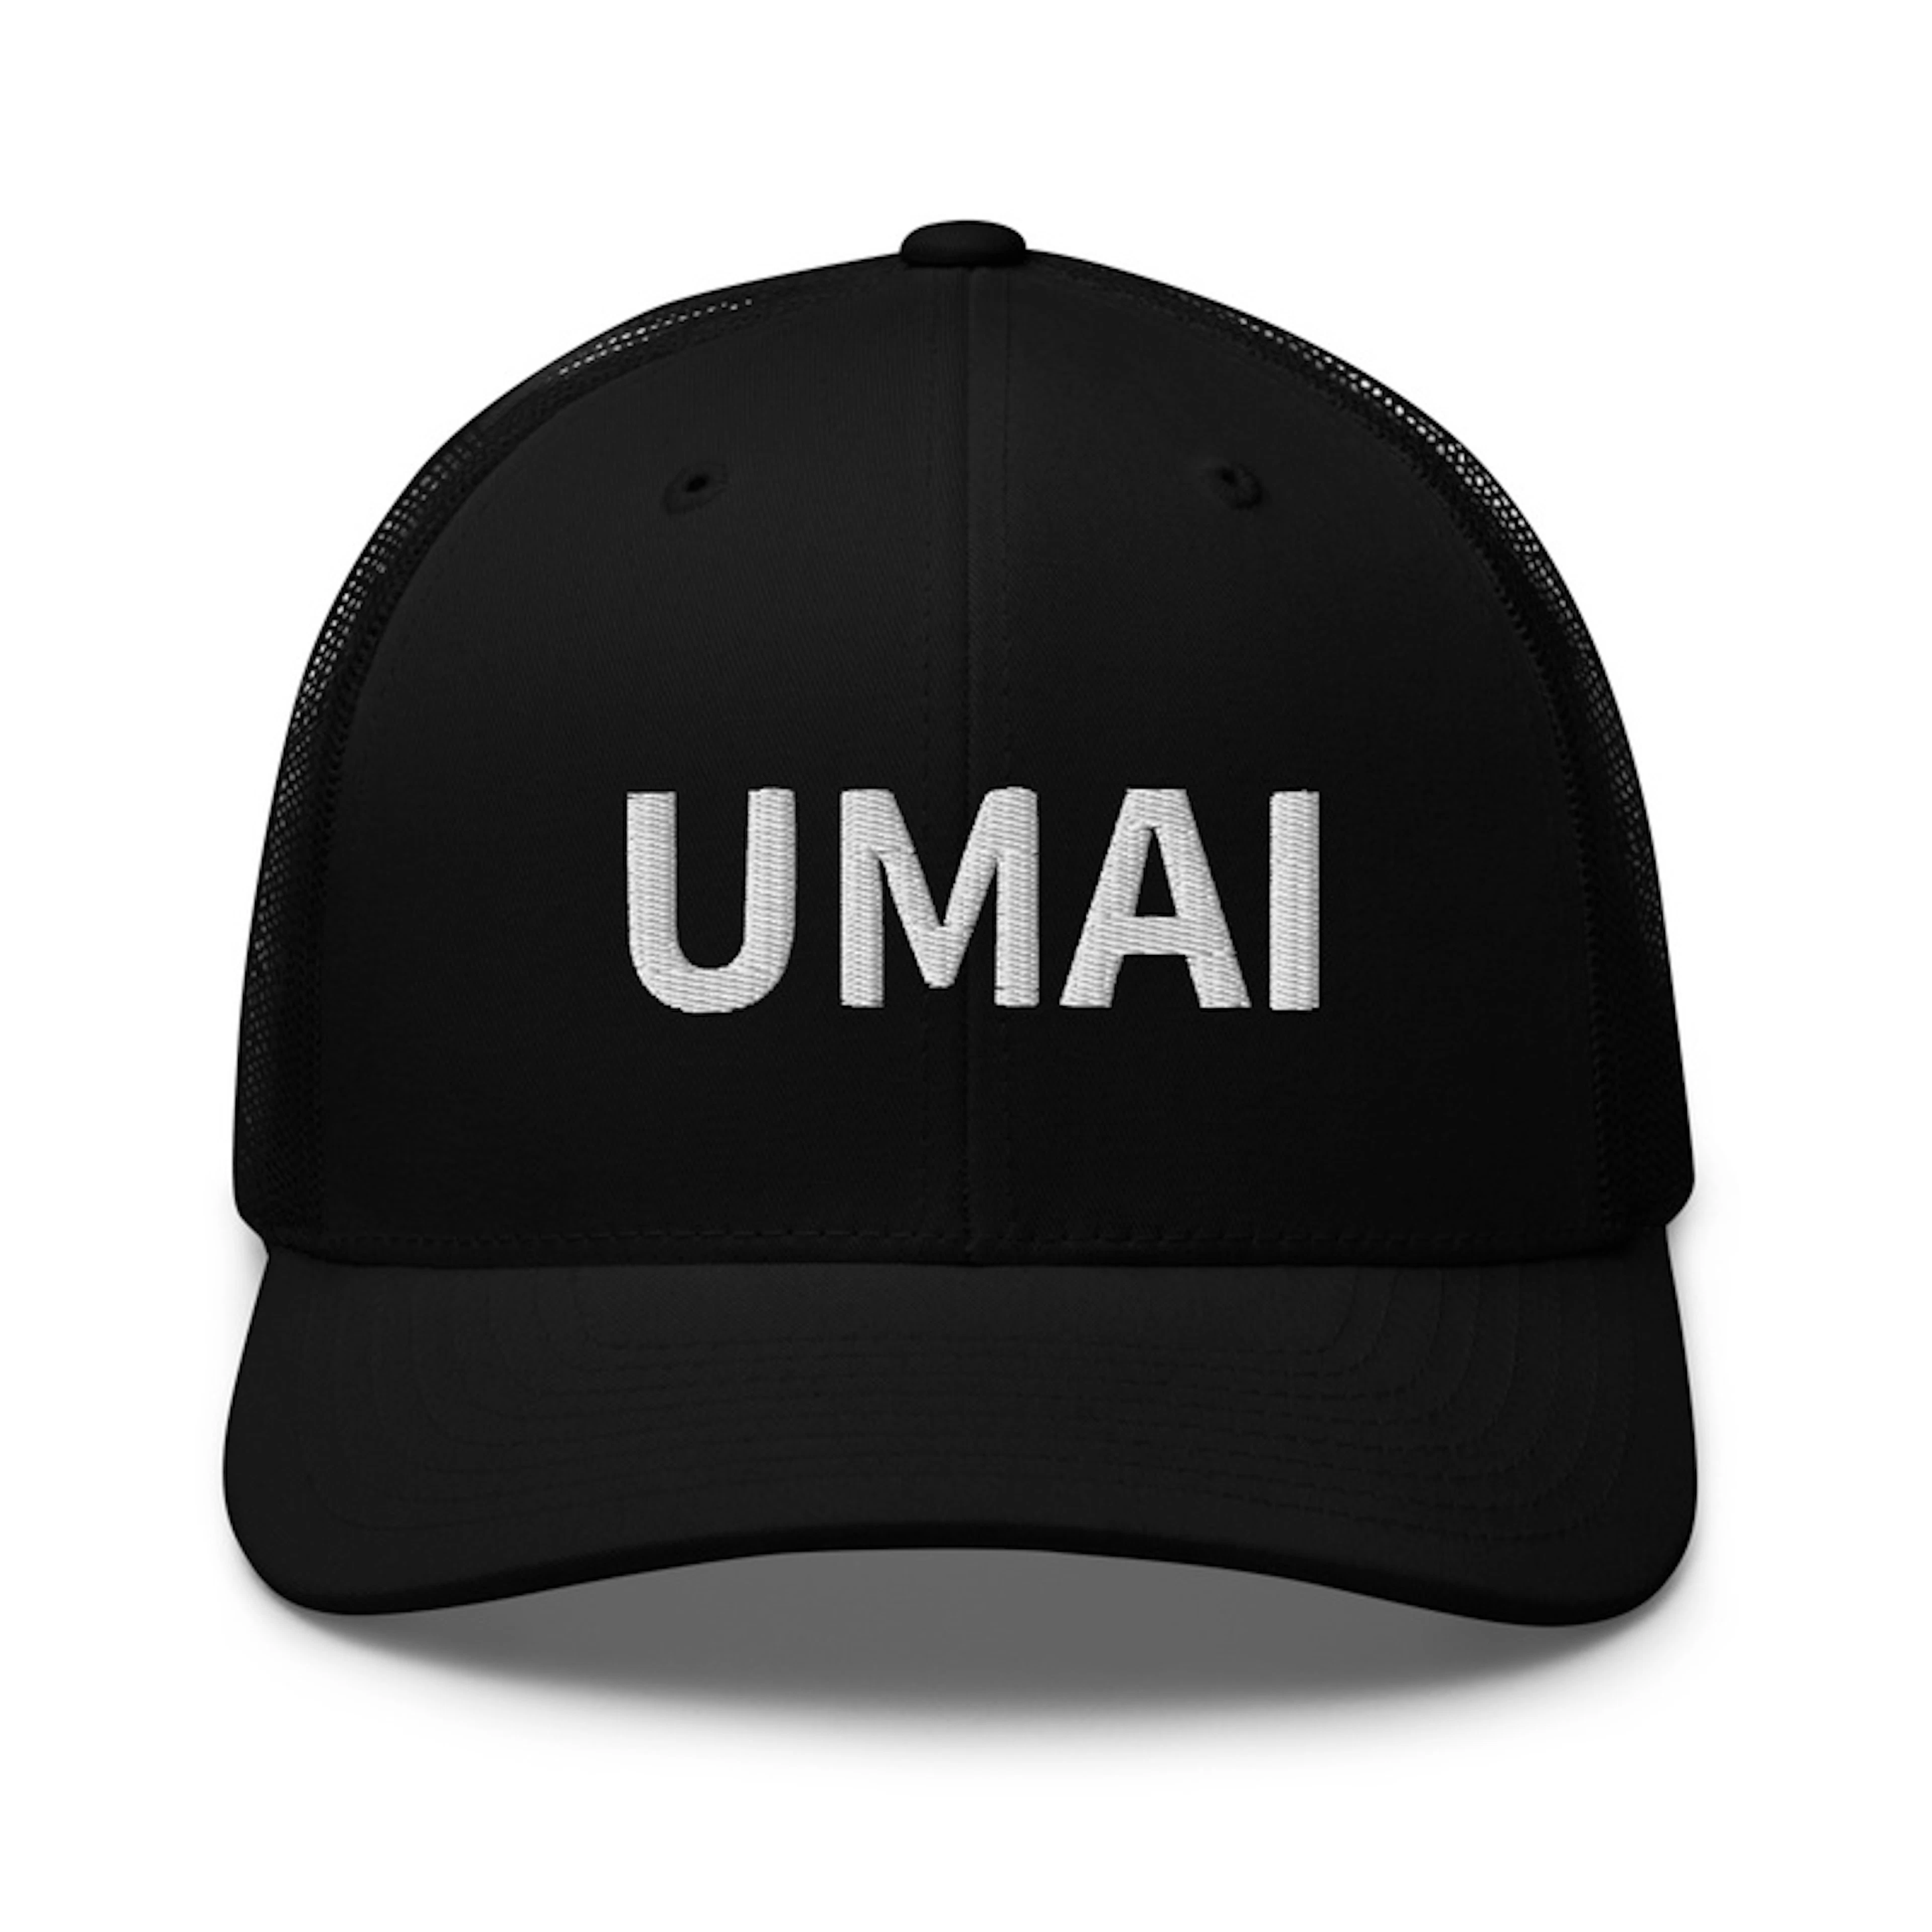 UMAI - The Restaurant Software Cap